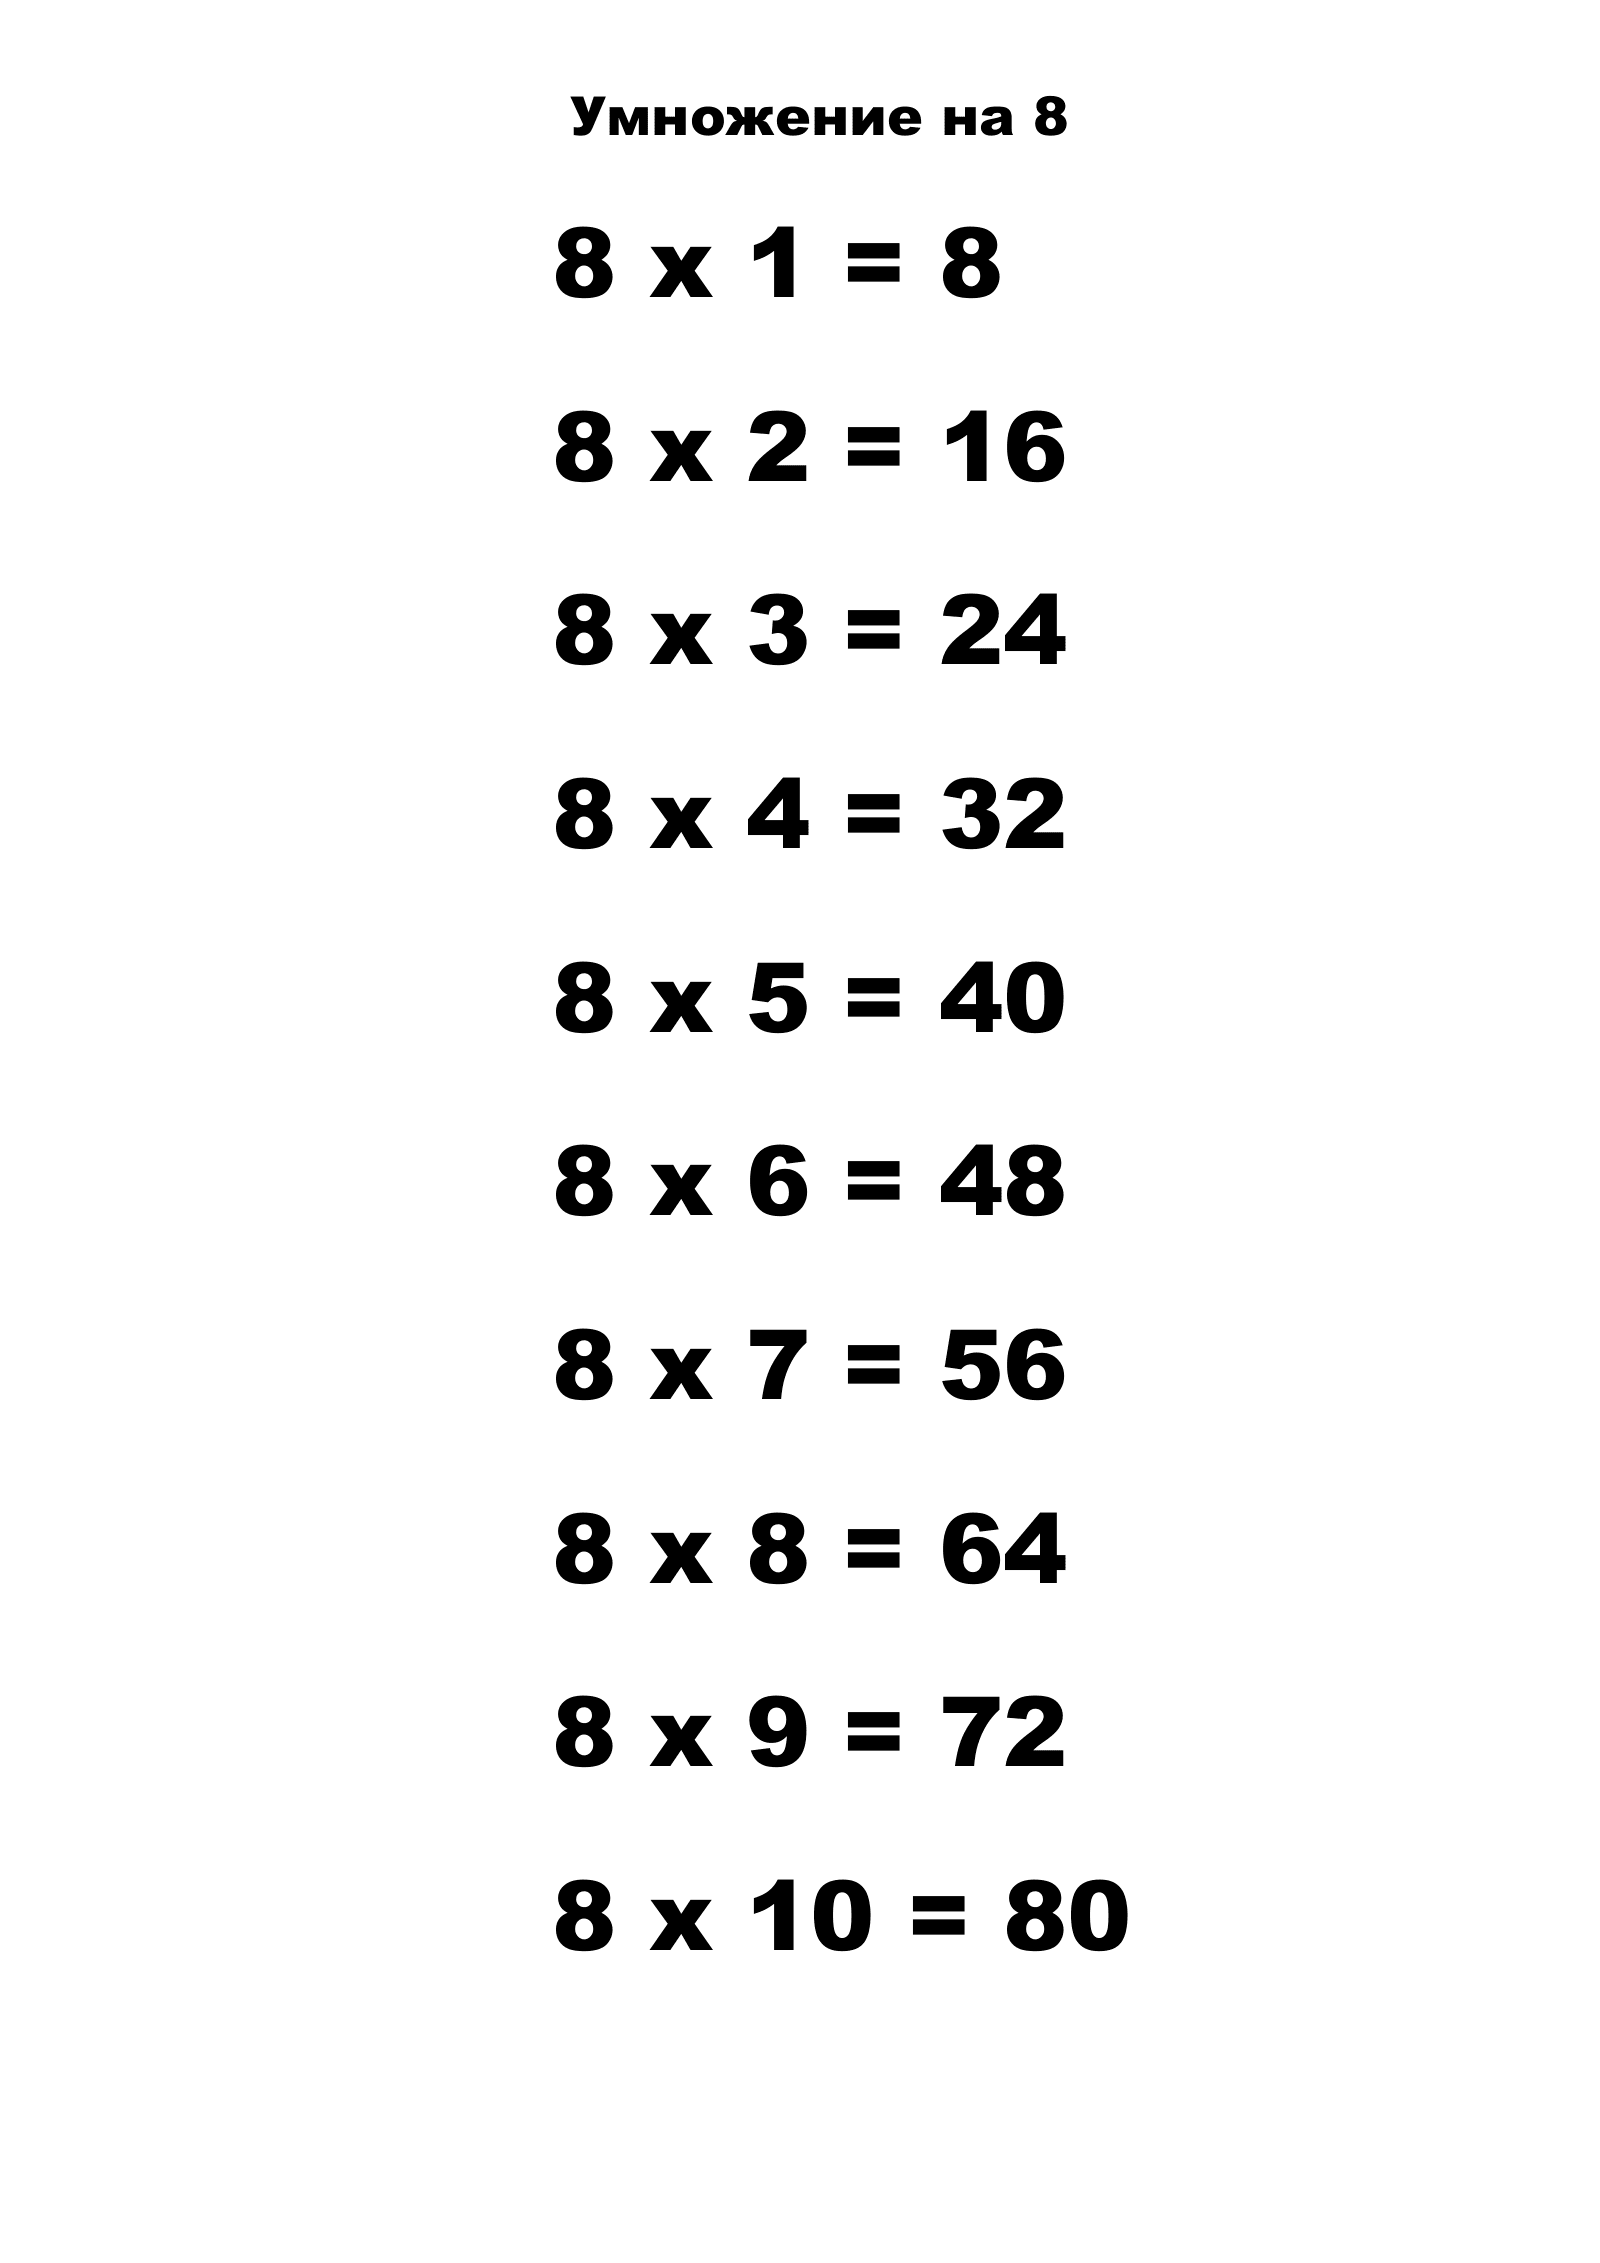 Таблица умножения на 8.